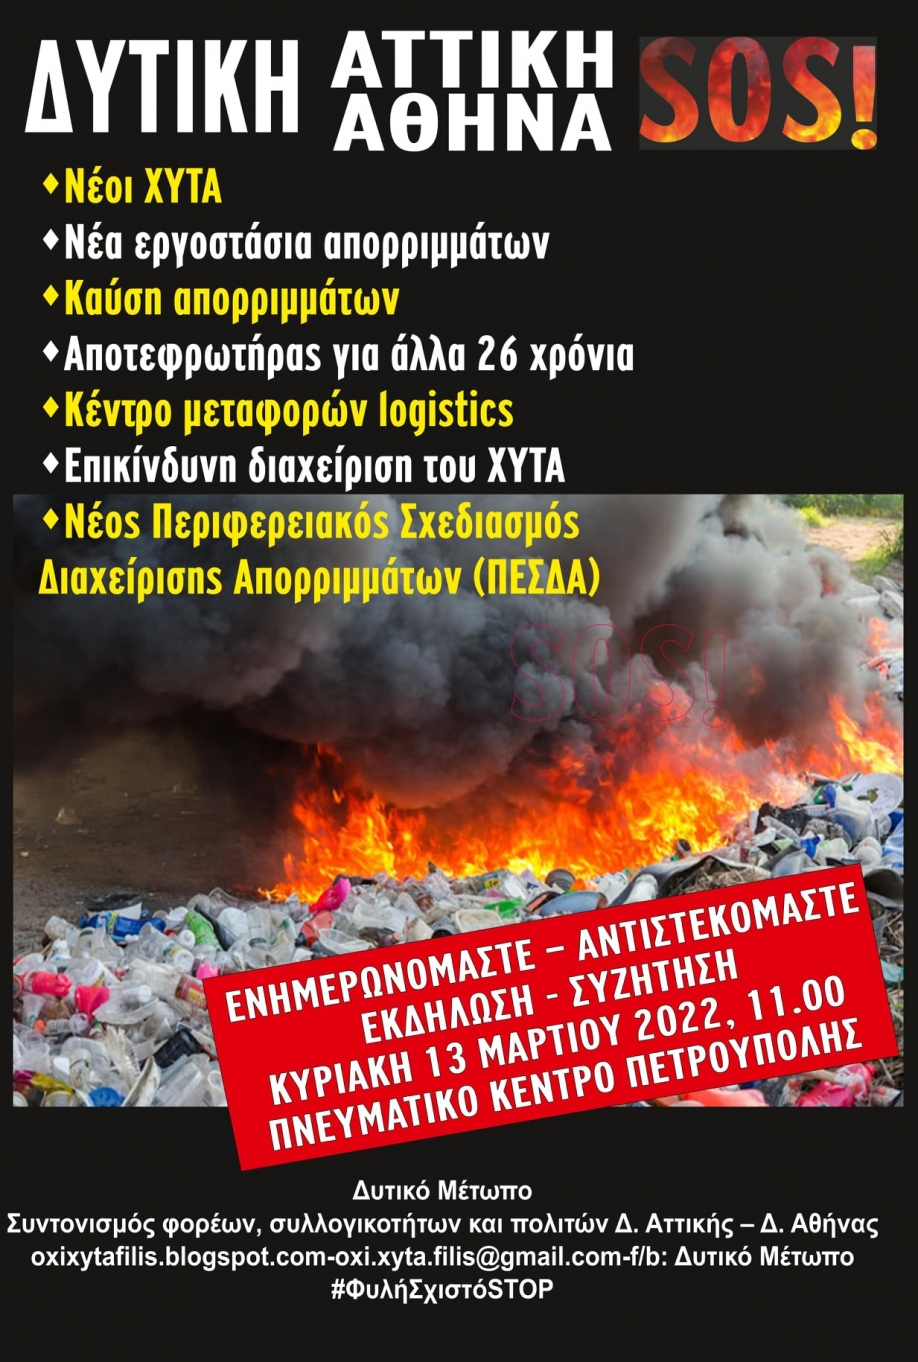 Δυτική Αθήνα - Δυτική Αττική SOS: Διαδικτυακή εκδήλωση του Δυτικού Μετώπου